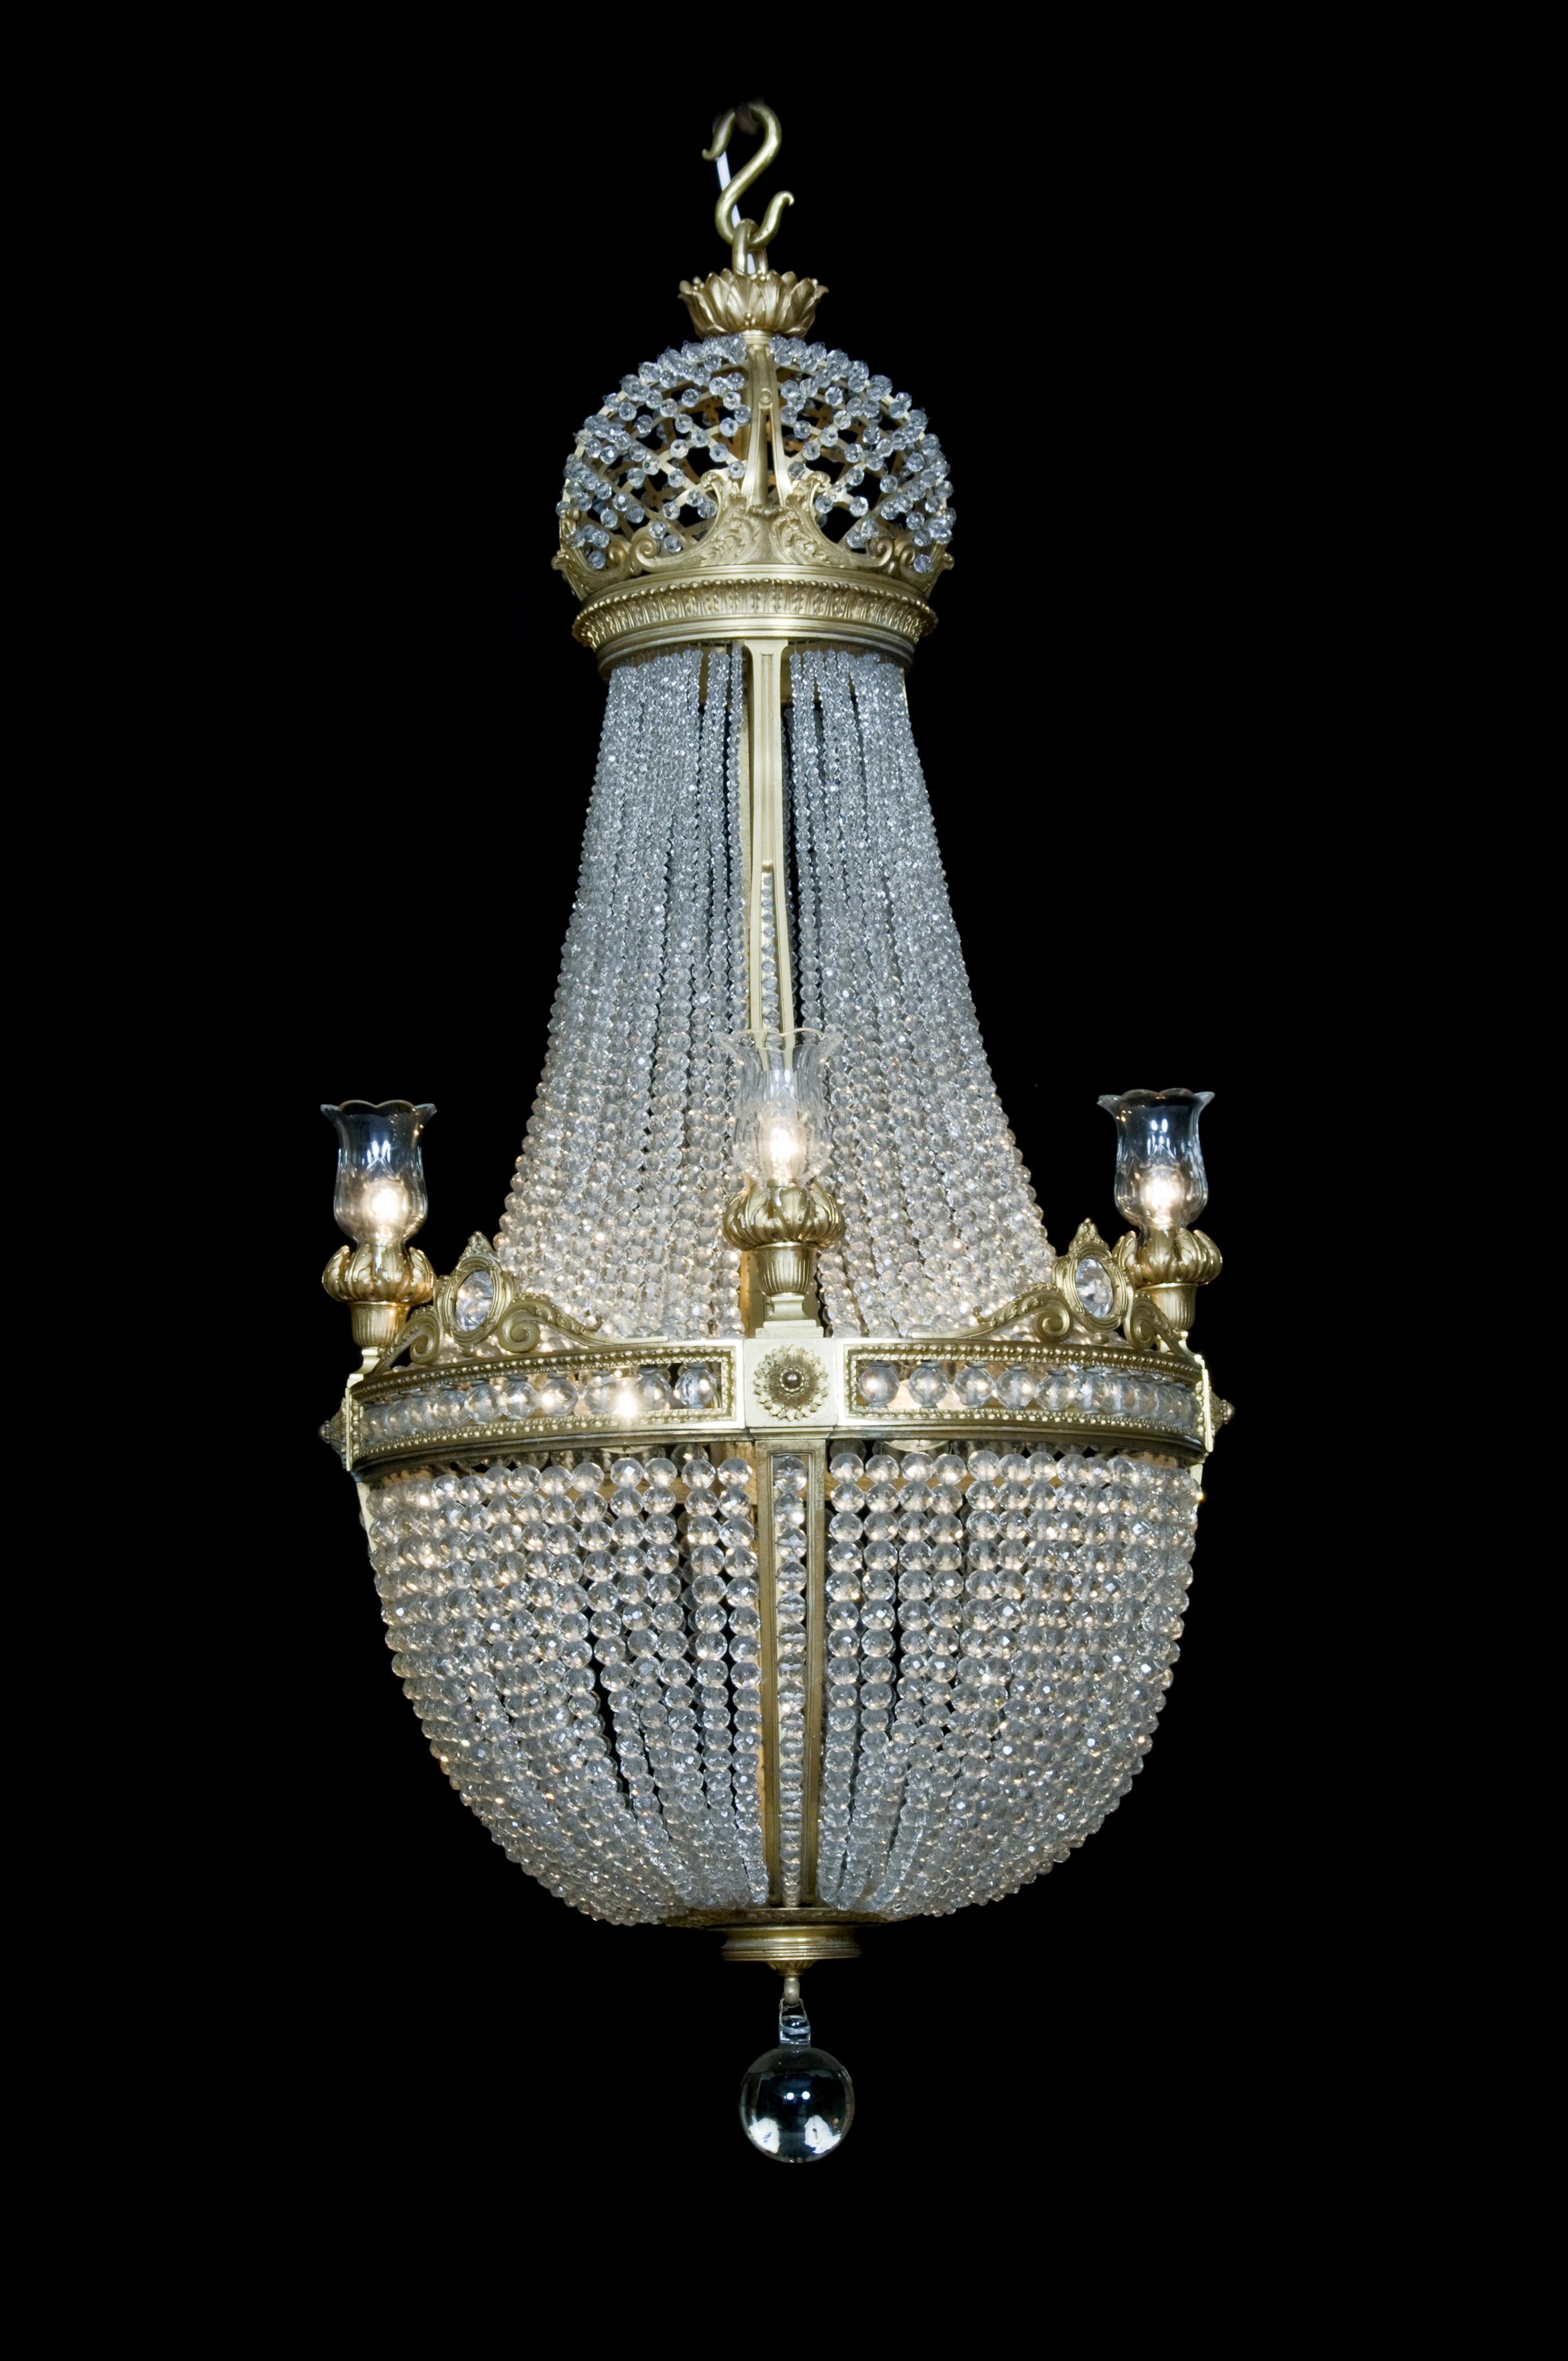 Lustre en forme de tente et de panier en bronze doré et cristal taillé, attribué à la Compagnie des Cristalleries de Baccarat. 

Paris, vers 1890.

Baccarat est le premier fabricant mondial d'articles en cristal. Fondée en 1764 sous le patronage